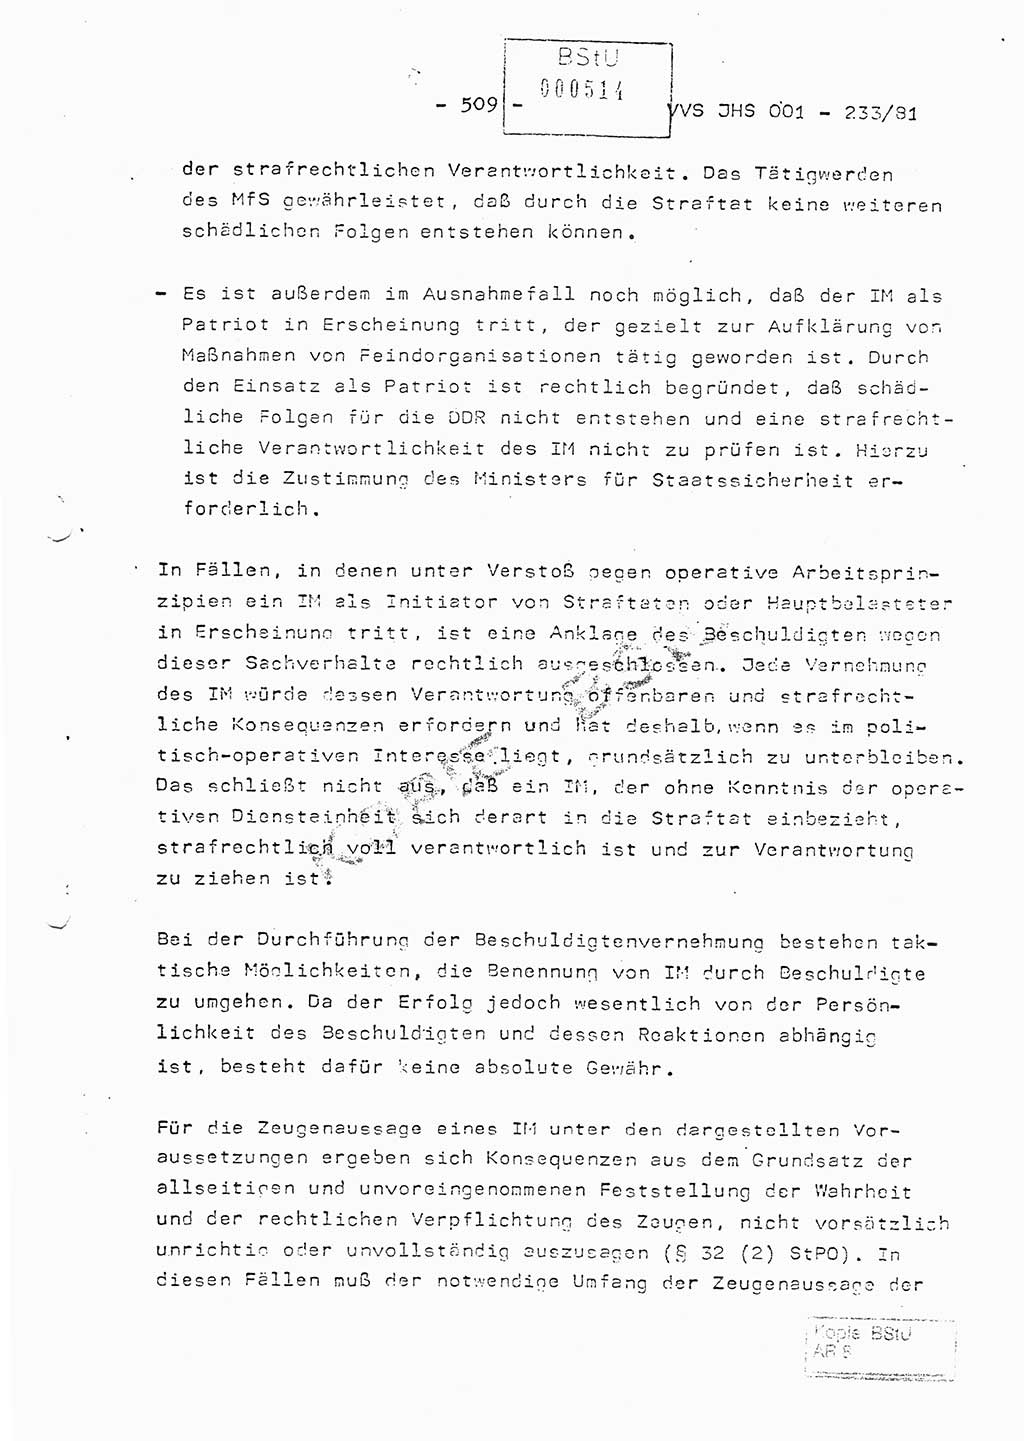 Dissertation Oberstleutnant Horst Zank (JHS), Oberstleutnant Dr. Karl-Heinz Knoblauch (JHS), Oberstleutnant Gustav-Adolf Kowalewski (HA Ⅸ), Oberstleutnant Wolfgang Plötner (HA Ⅸ), Ministerium für Staatssicherheit (MfS) [Deutsche Demokratische Republik (DDR)], Juristische Hochschule (JHS), Vertrauliche Verschlußsache (VVS) o001-233/81, Potsdam 1981, Blatt 509 (Diss. MfS DDR JHS VVS o001-233/81 1981, Bl. 509)